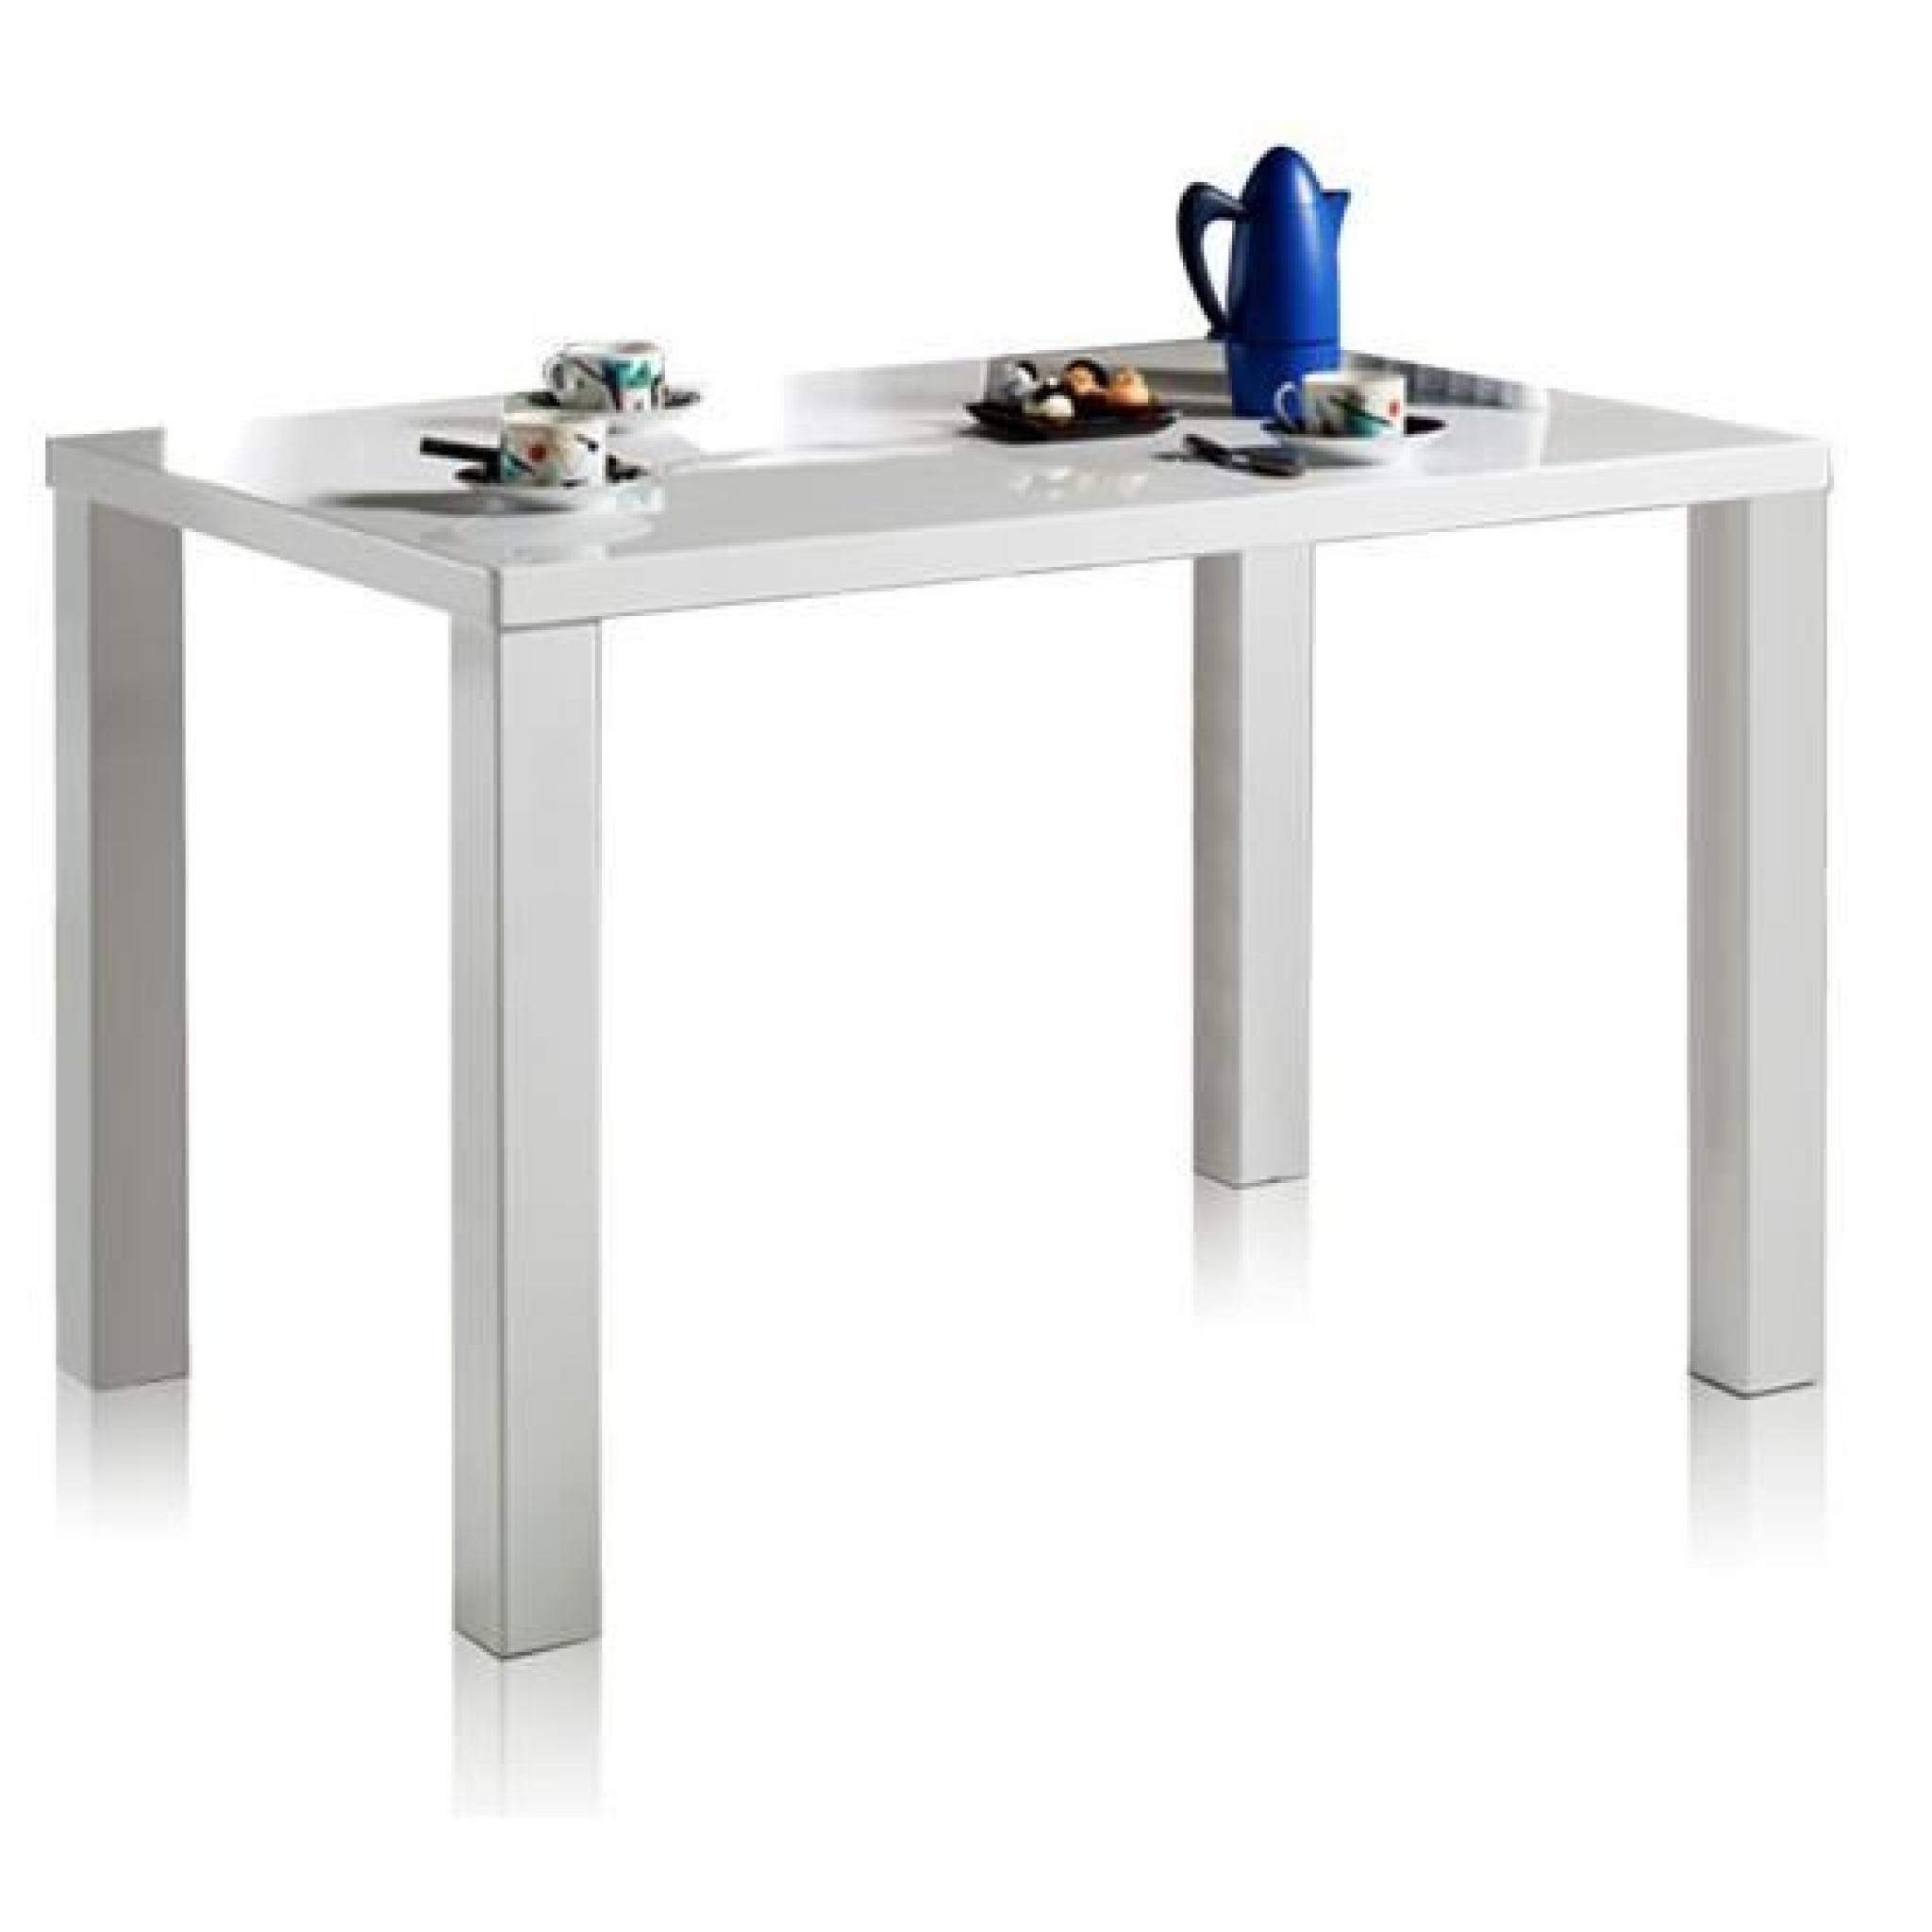 Table 80x120cm coloris blanc laqué